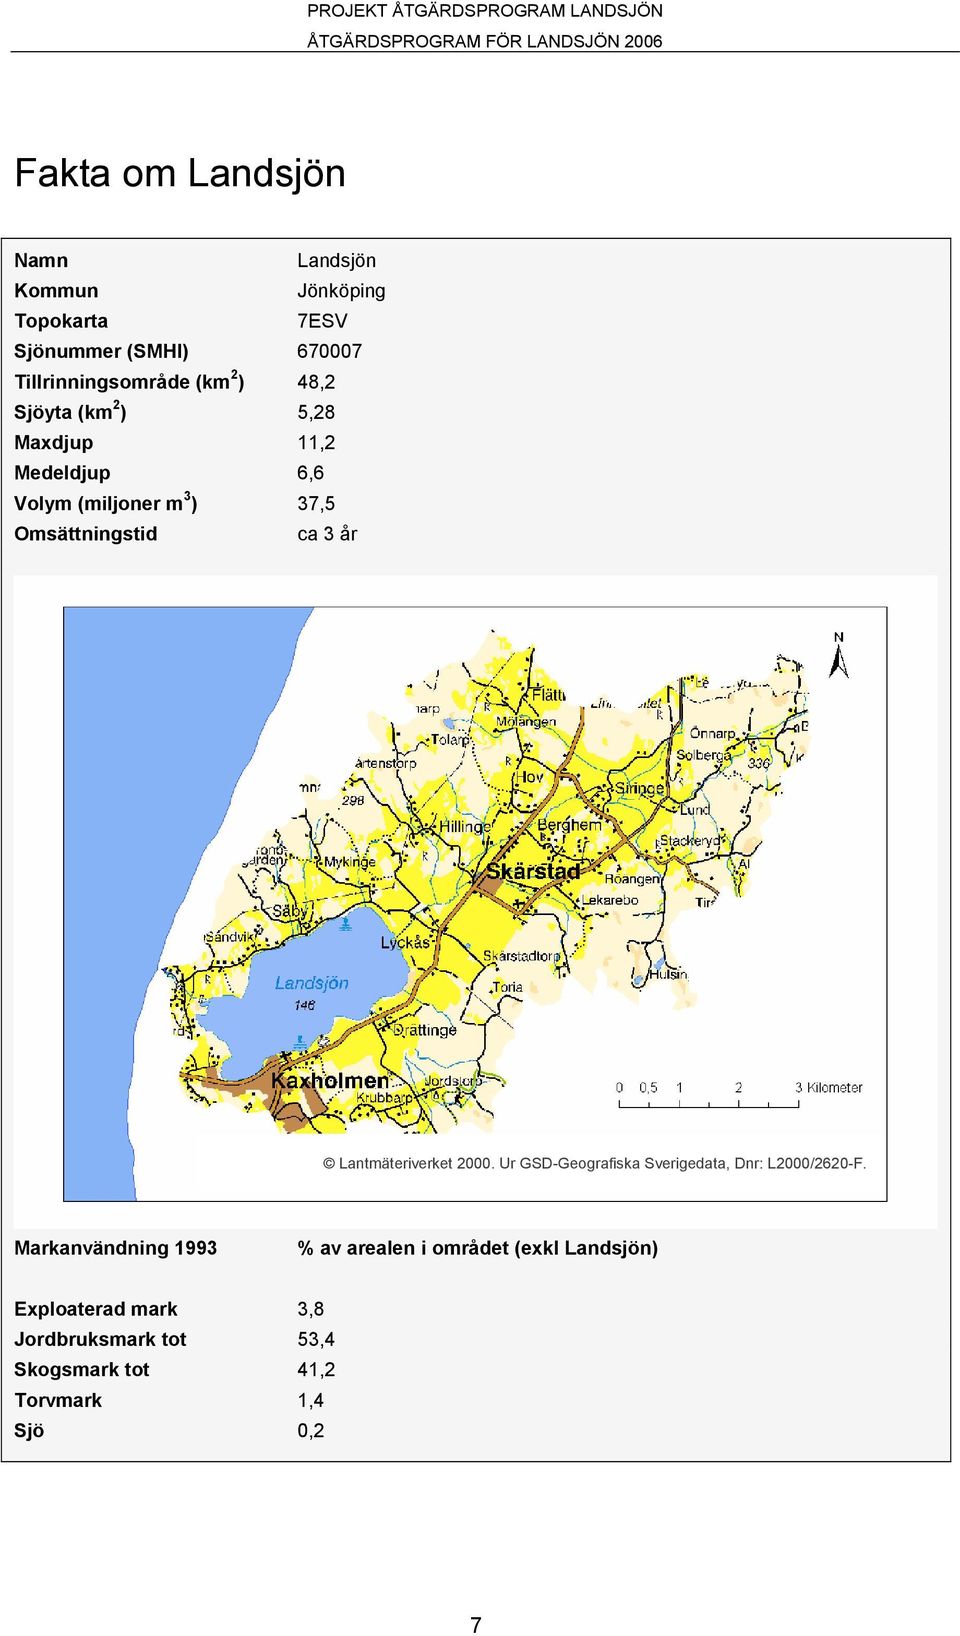 Omsättningstid ca 3 år Lantmäteriverket 2000. Ur GSD-Geografiska Sverigedata, Dnr: L2000/2620-F.